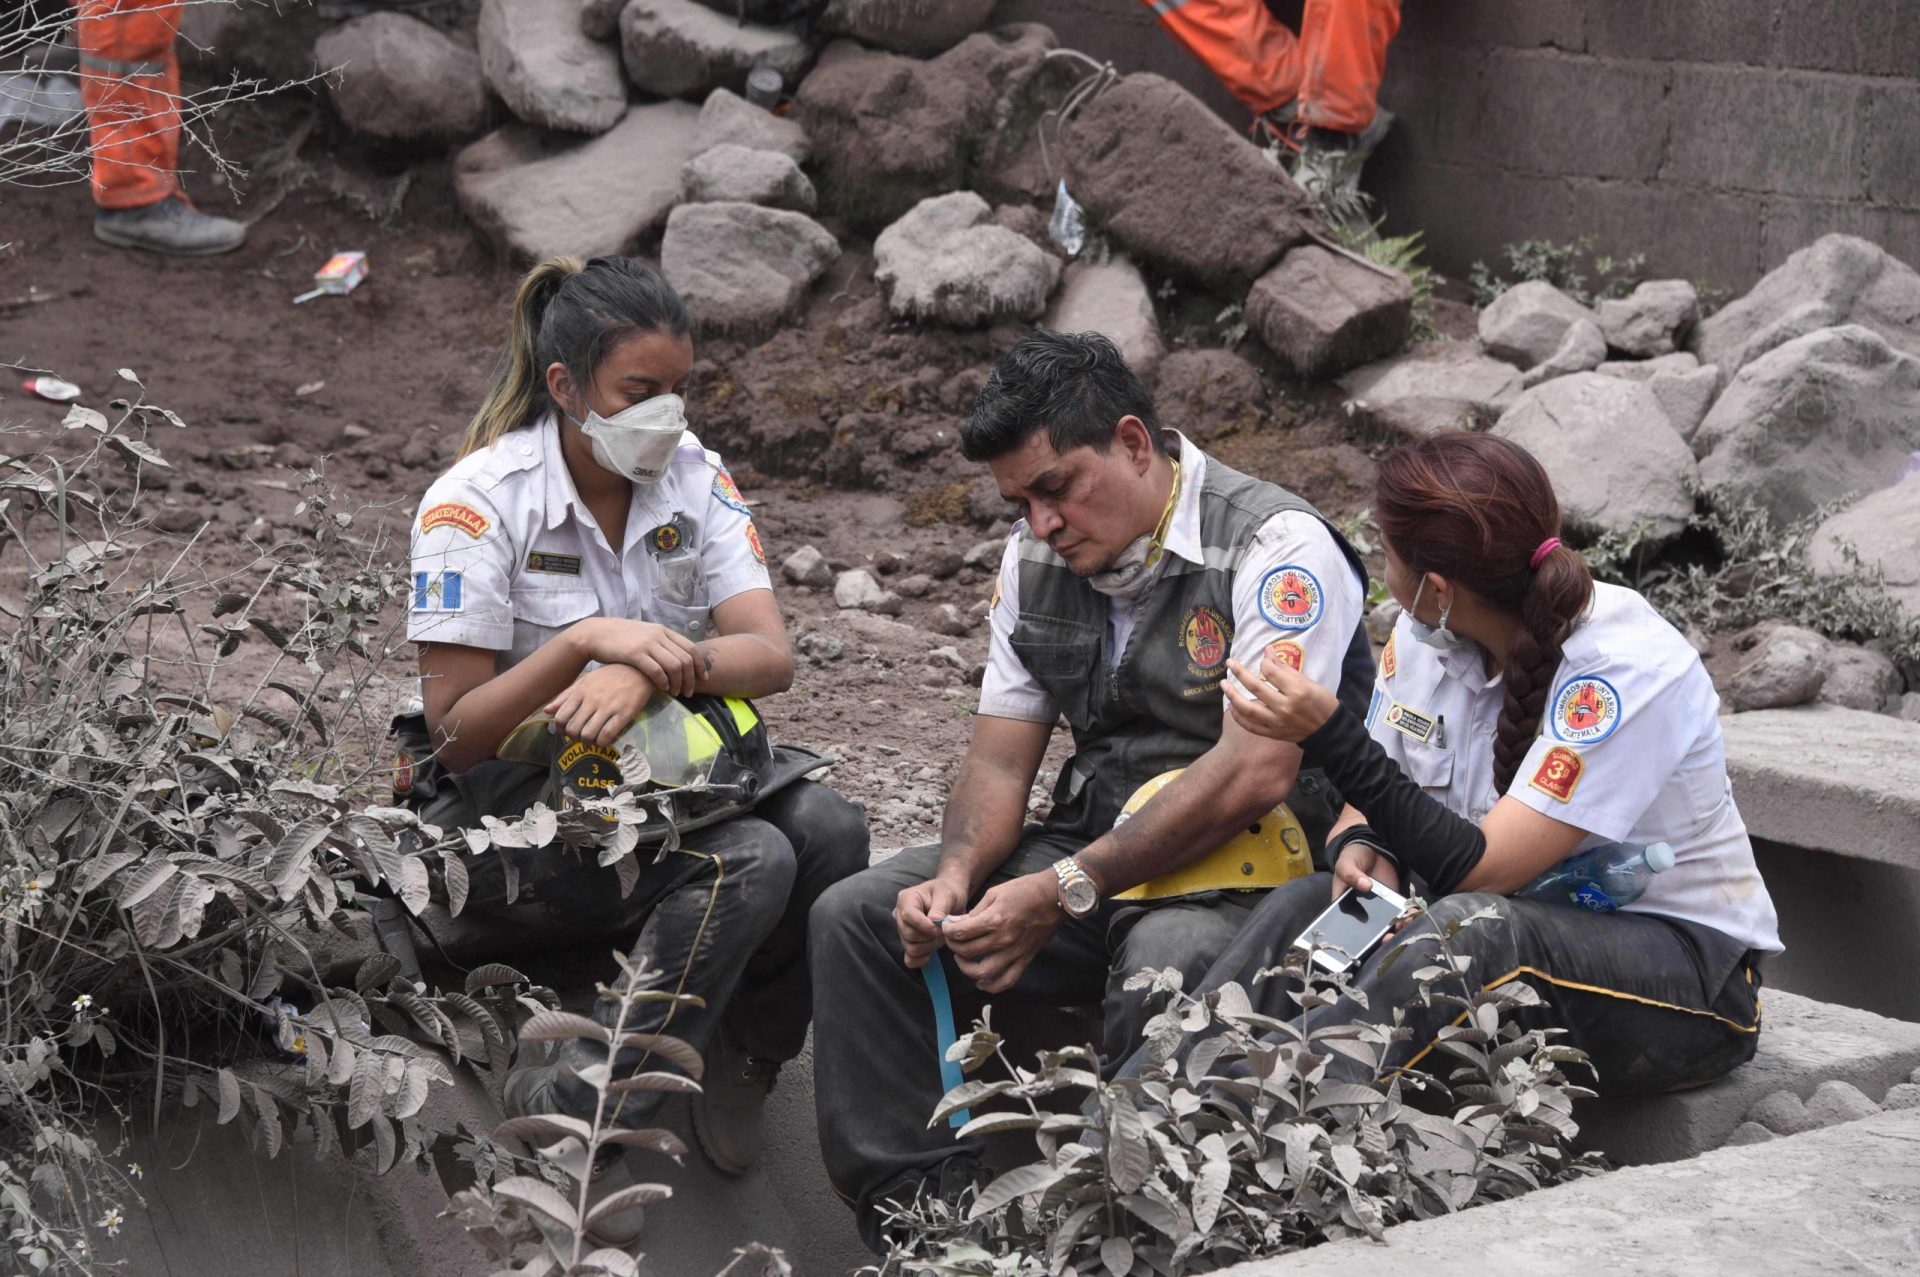 75 mortos, 192 desaparecidos, mais de 2600 desalojados. A tragédia na Guatemala